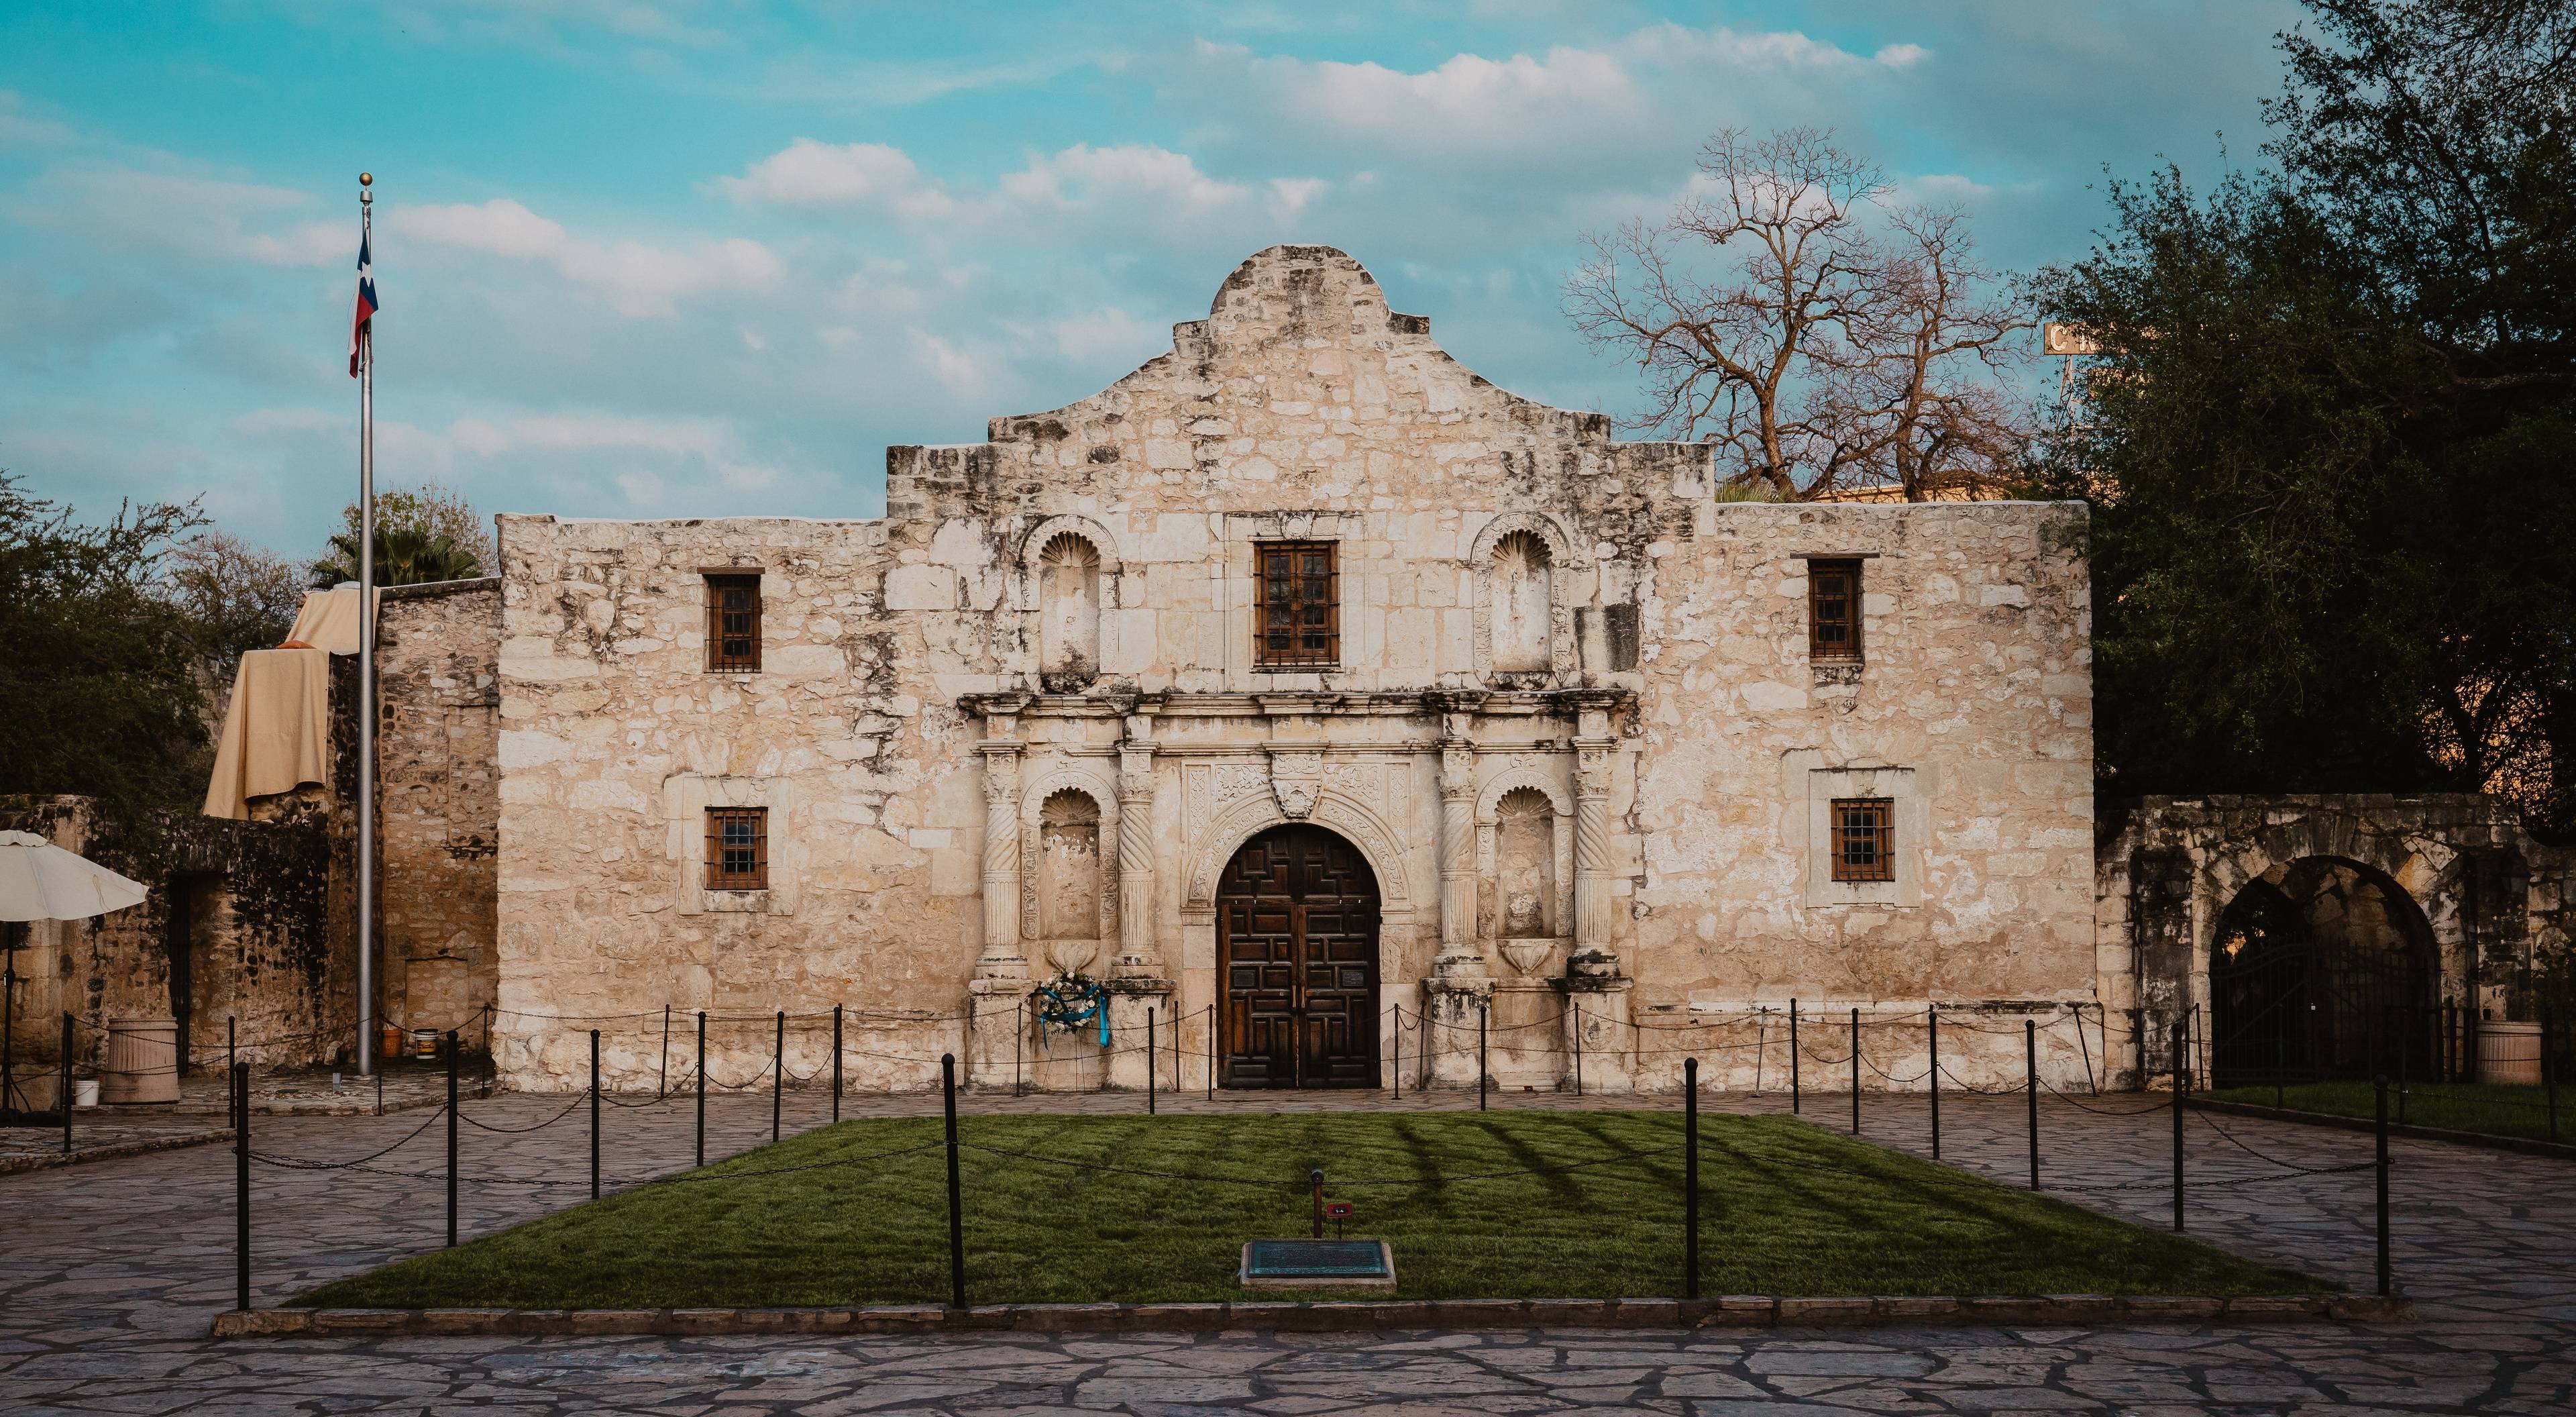 Road Trip From Dallas to San Antonio: Explore Texas History